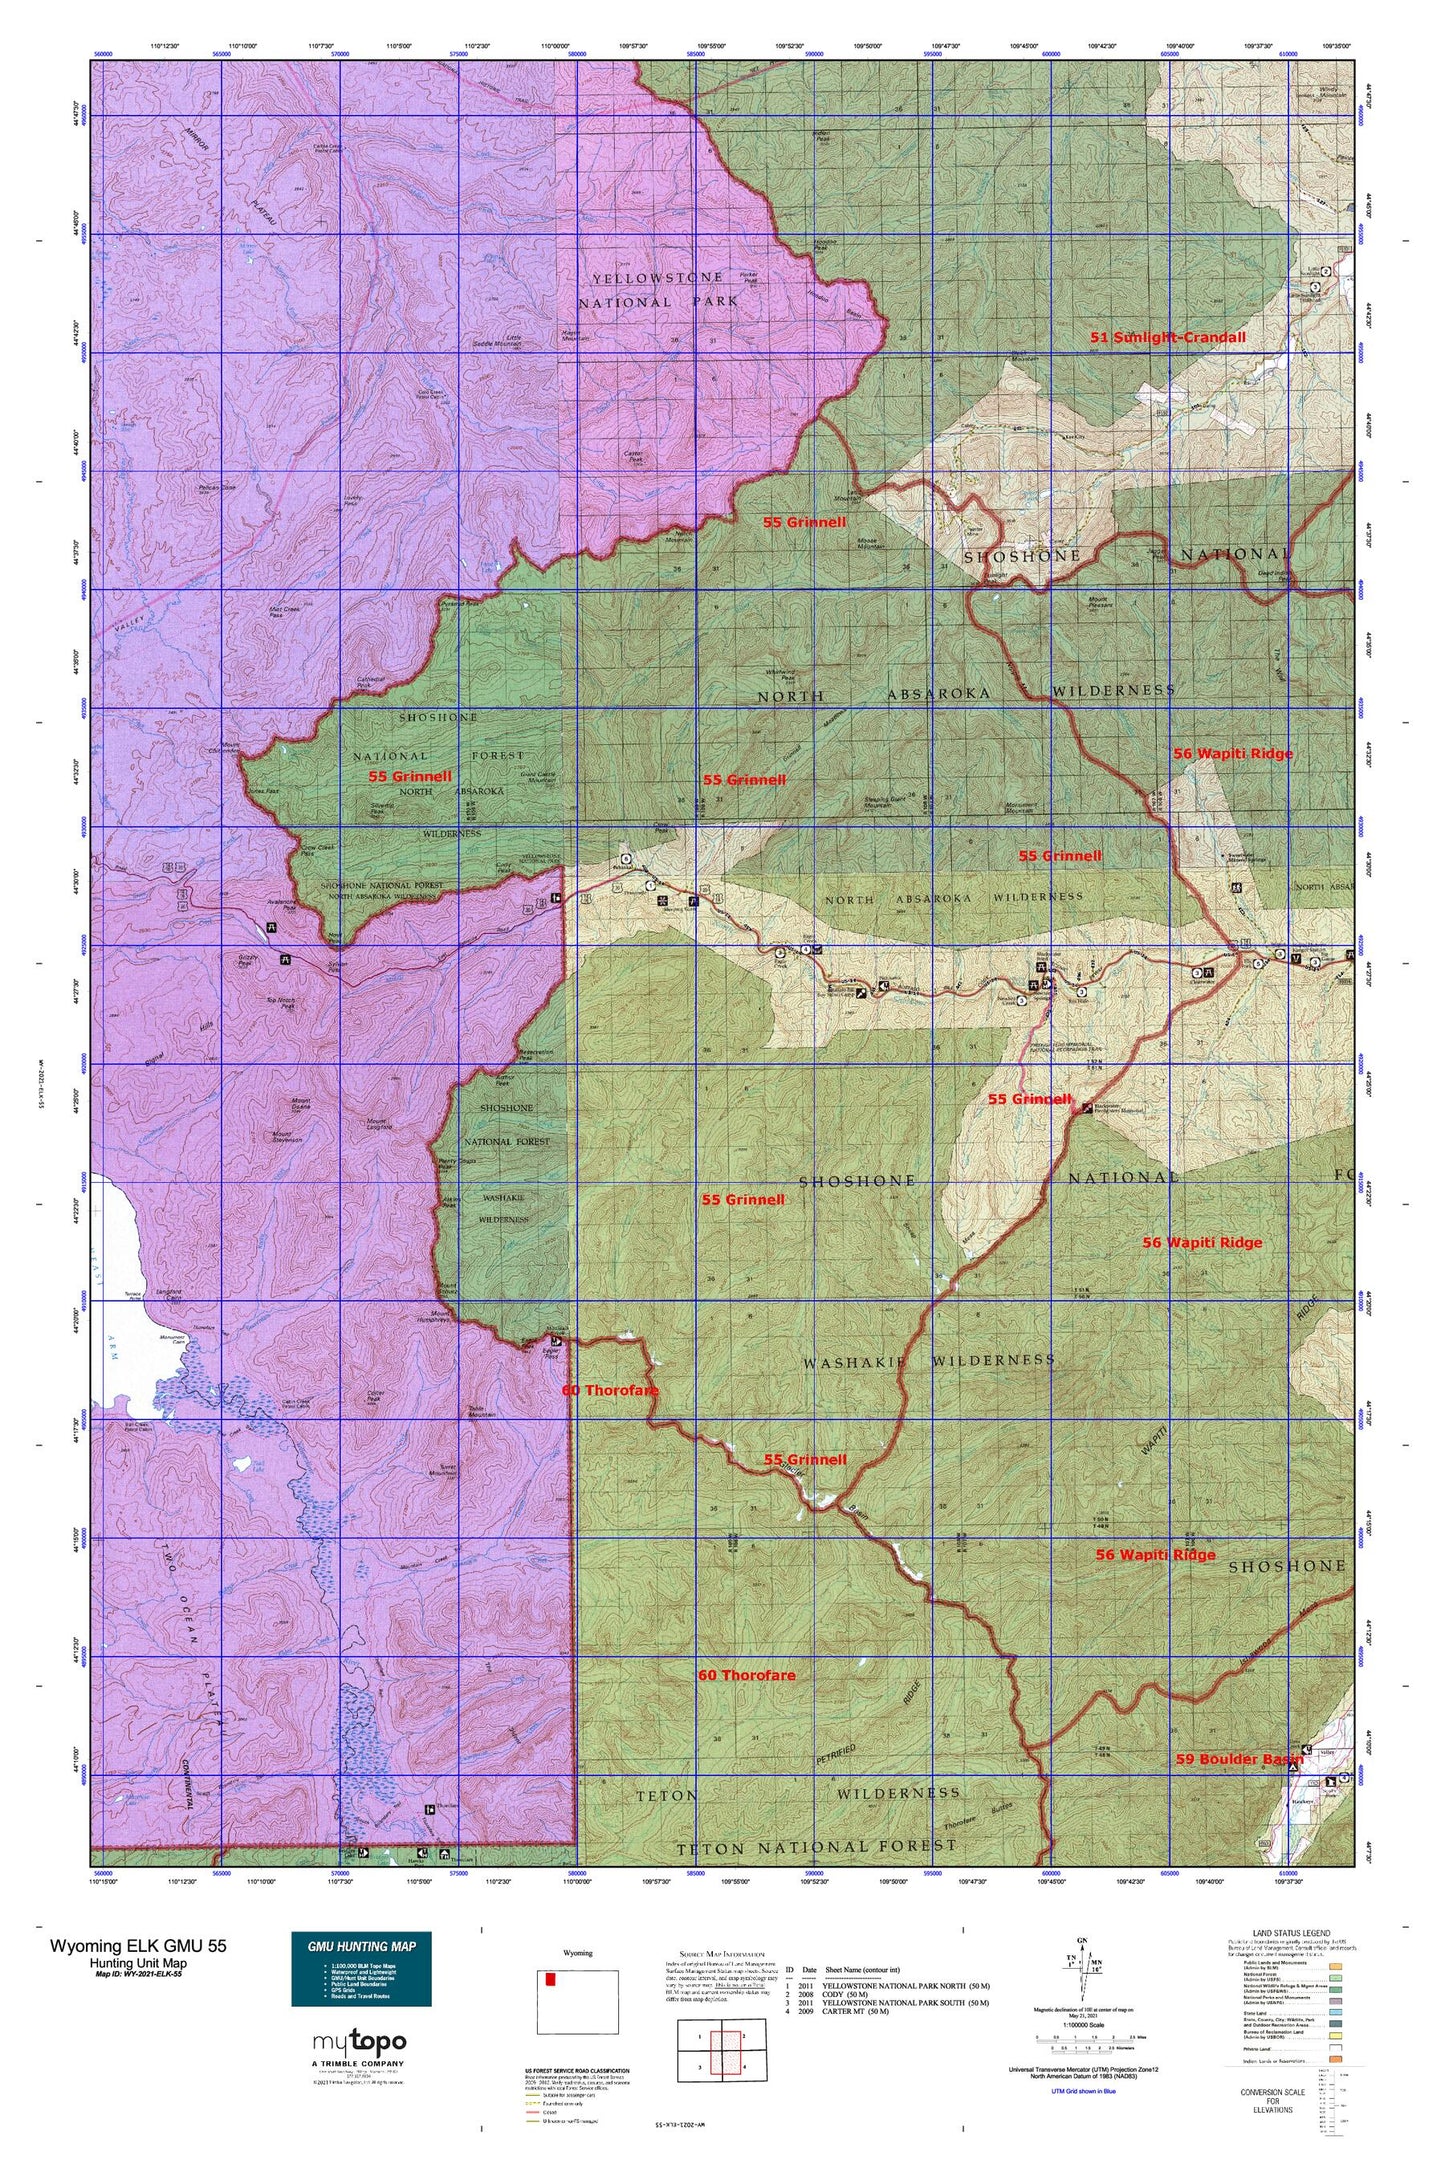 Wyoming Elk GMU 55 Map Image